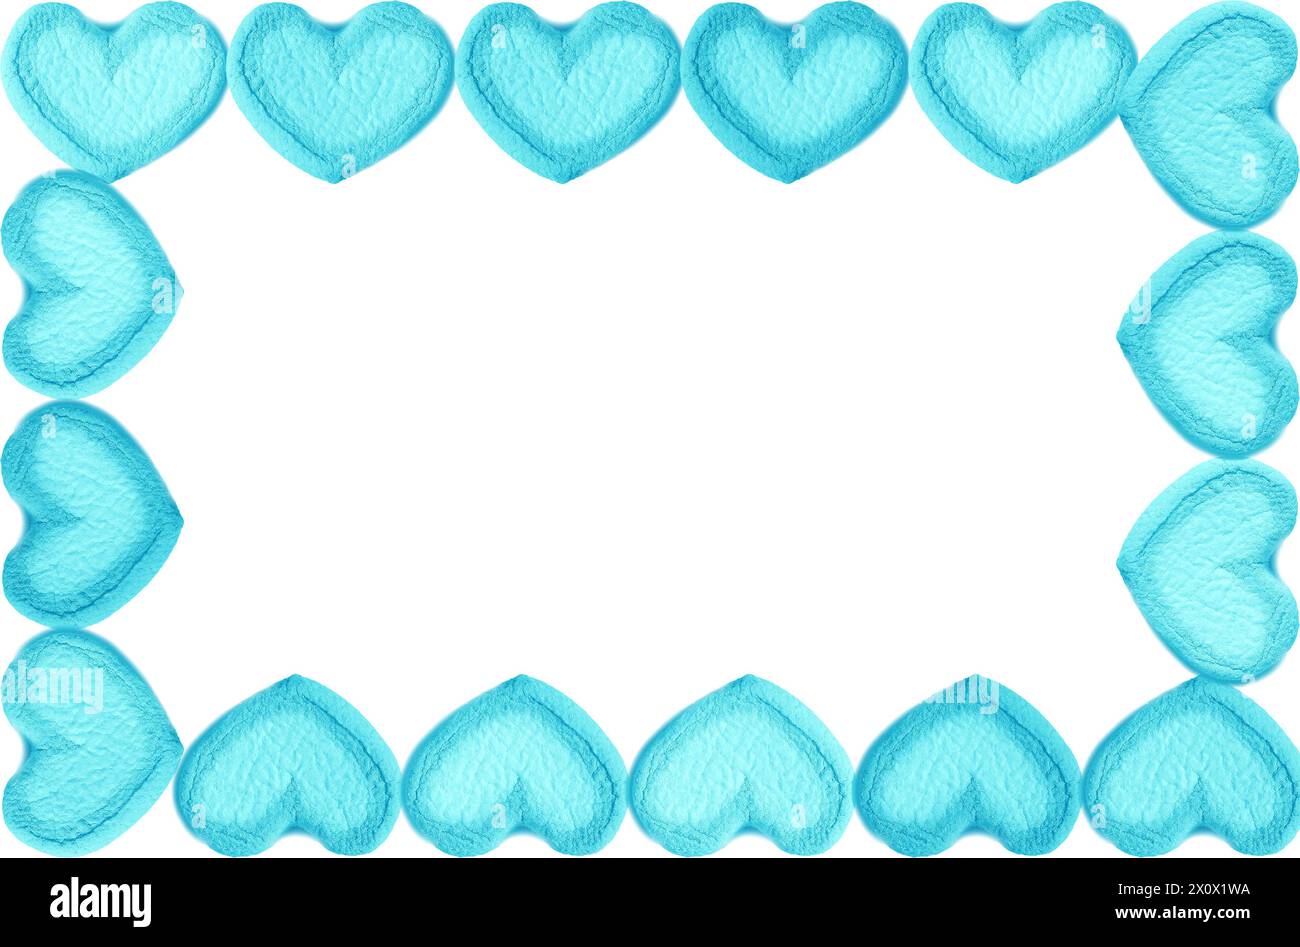 Wunderschöner Rahmen von Arctic Blue Heart Shaped Marshmallow Bondies auf weißem Hintergrund Stockfoto